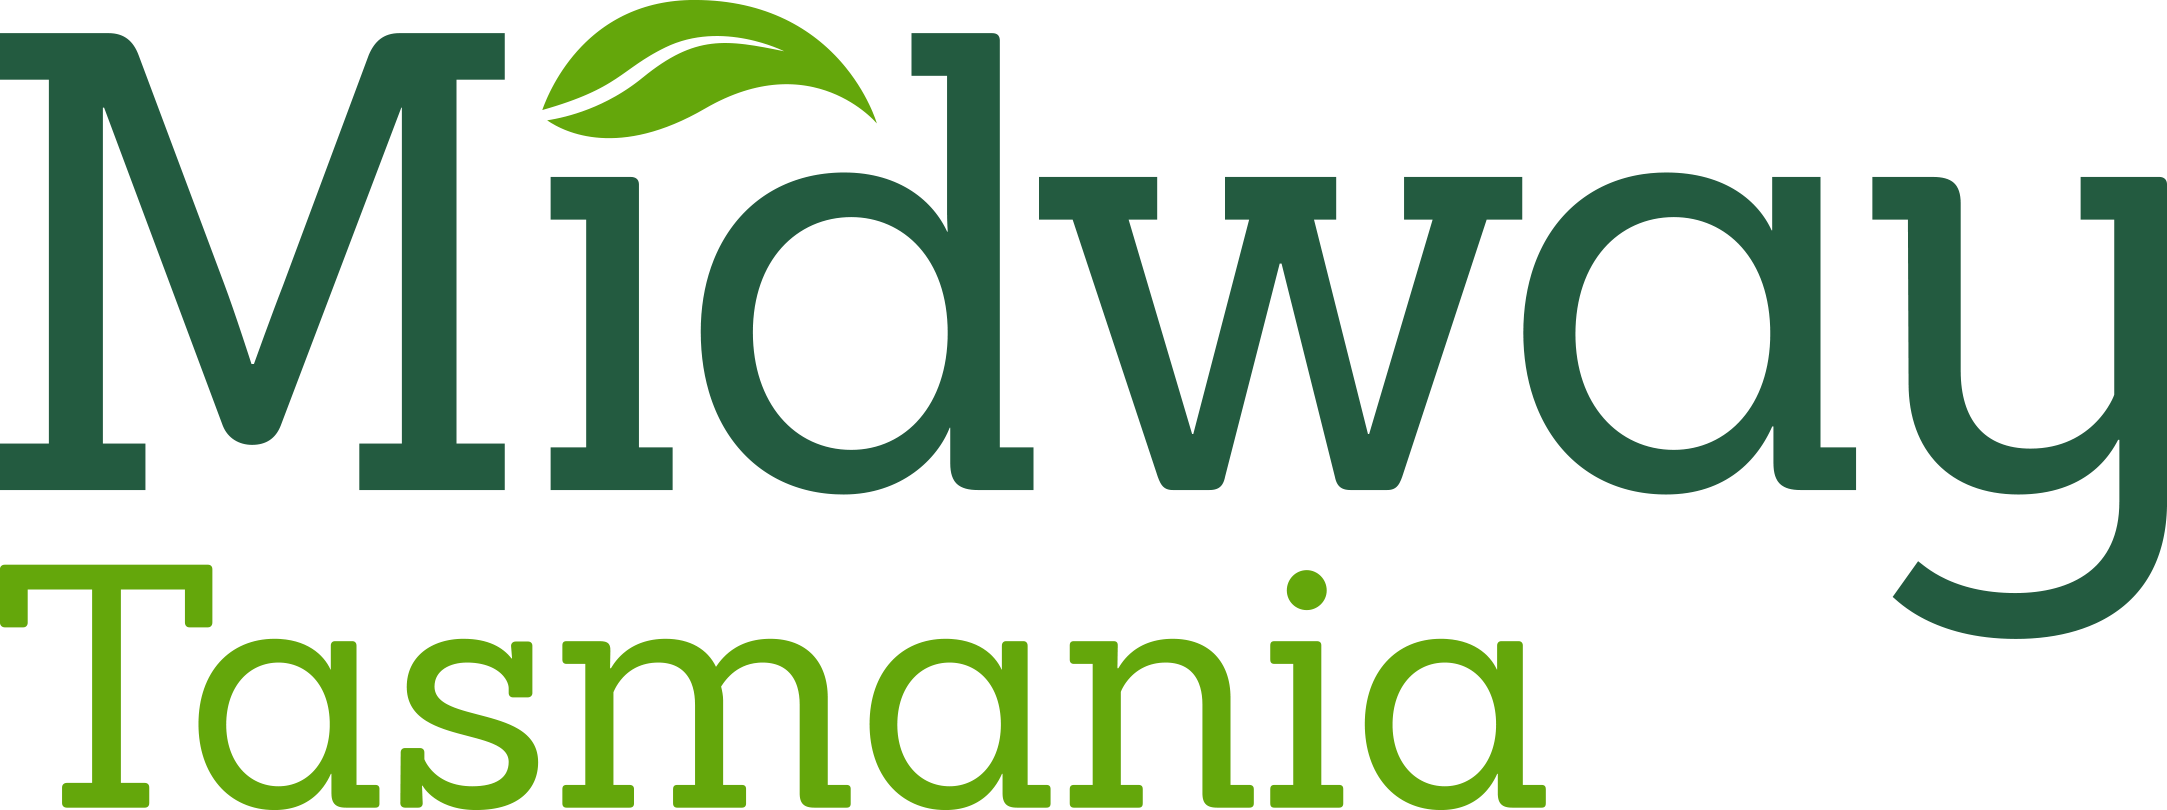 Midway Tasmania Logo RGB